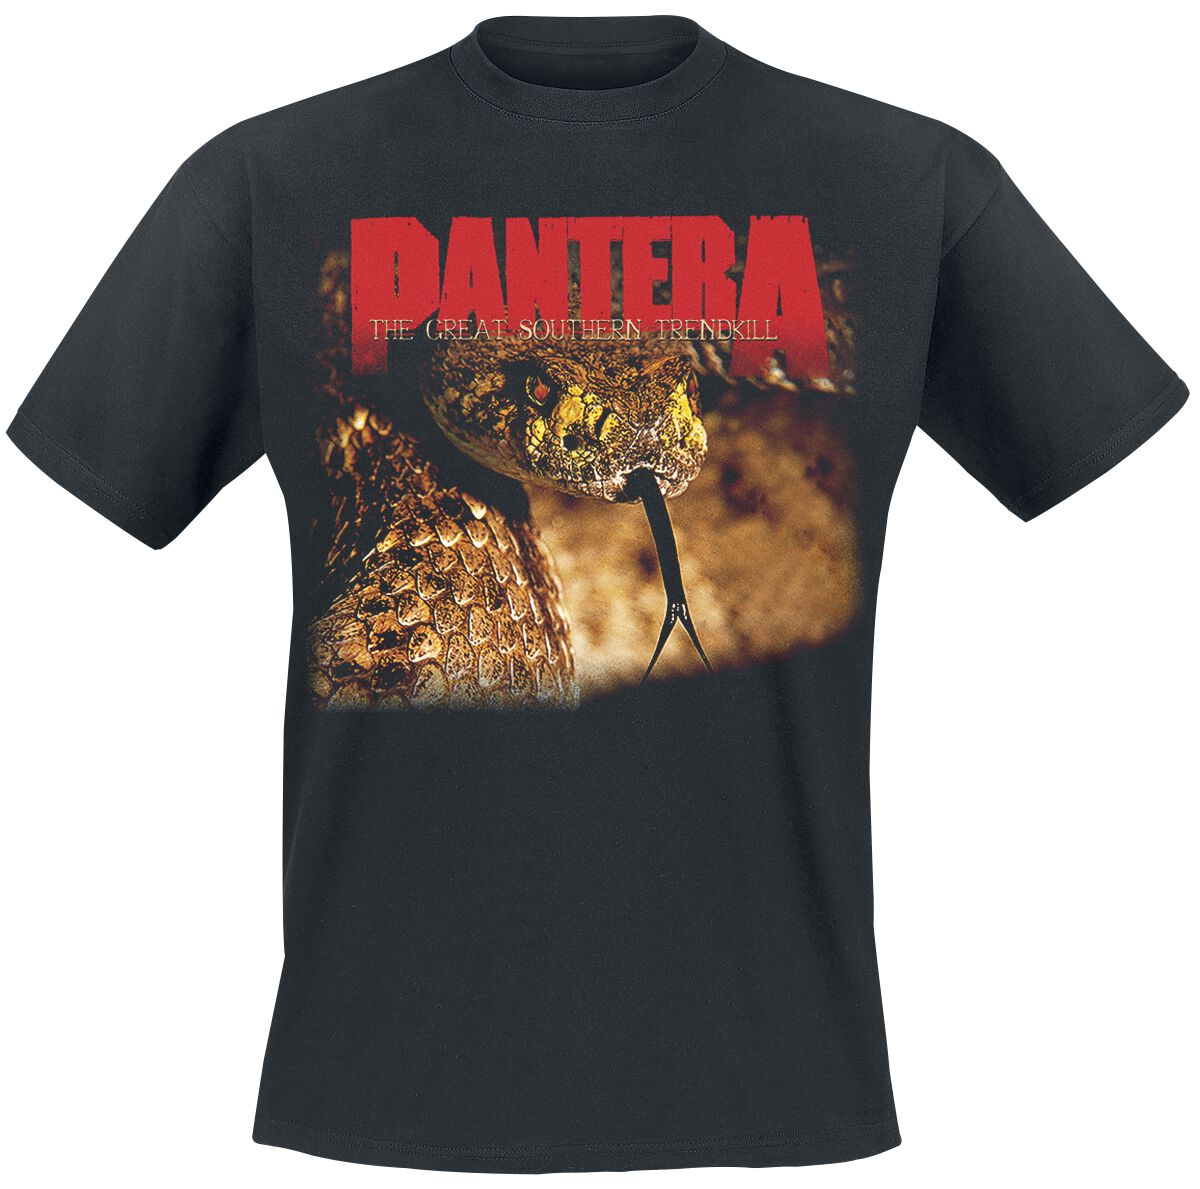 Pantera T-Shirt - The Great Southern Trendkill - S bis XXL - für Männer - Größe L - schwarz  - Lizenziertes Merchandise!